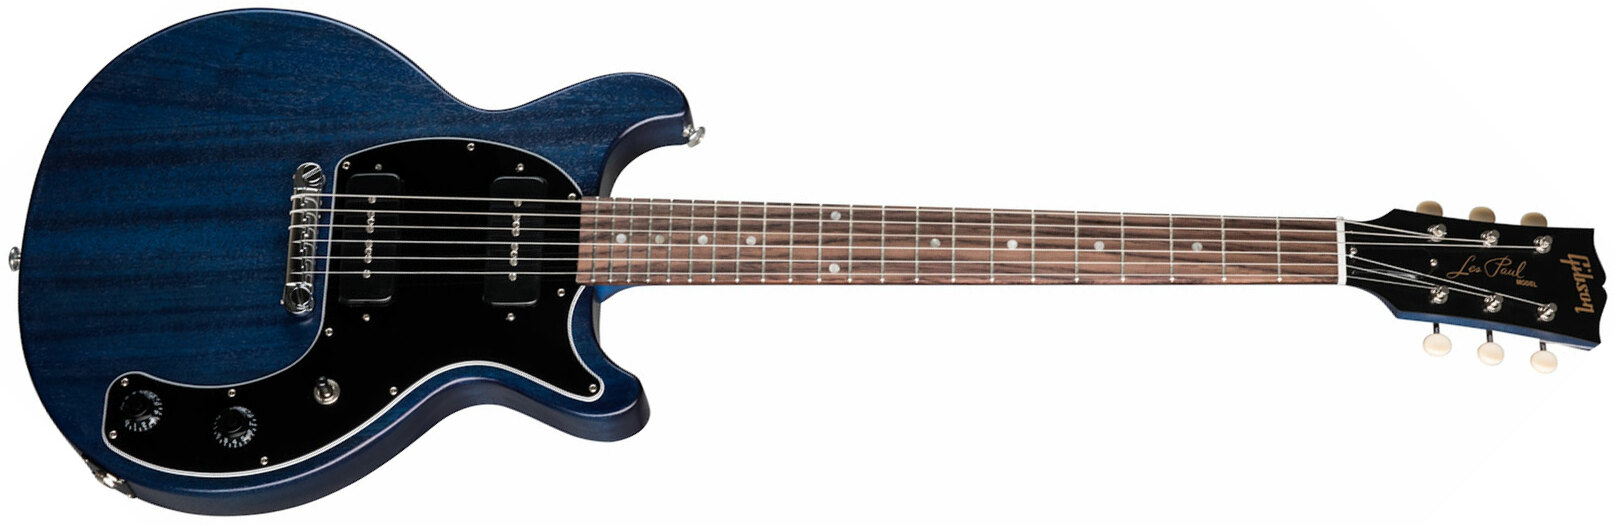 Gibson Les Paul Special Tribute Dc Modern P90 - Blue Stain - Guitarra eléctrica de doble corte. - Main picture